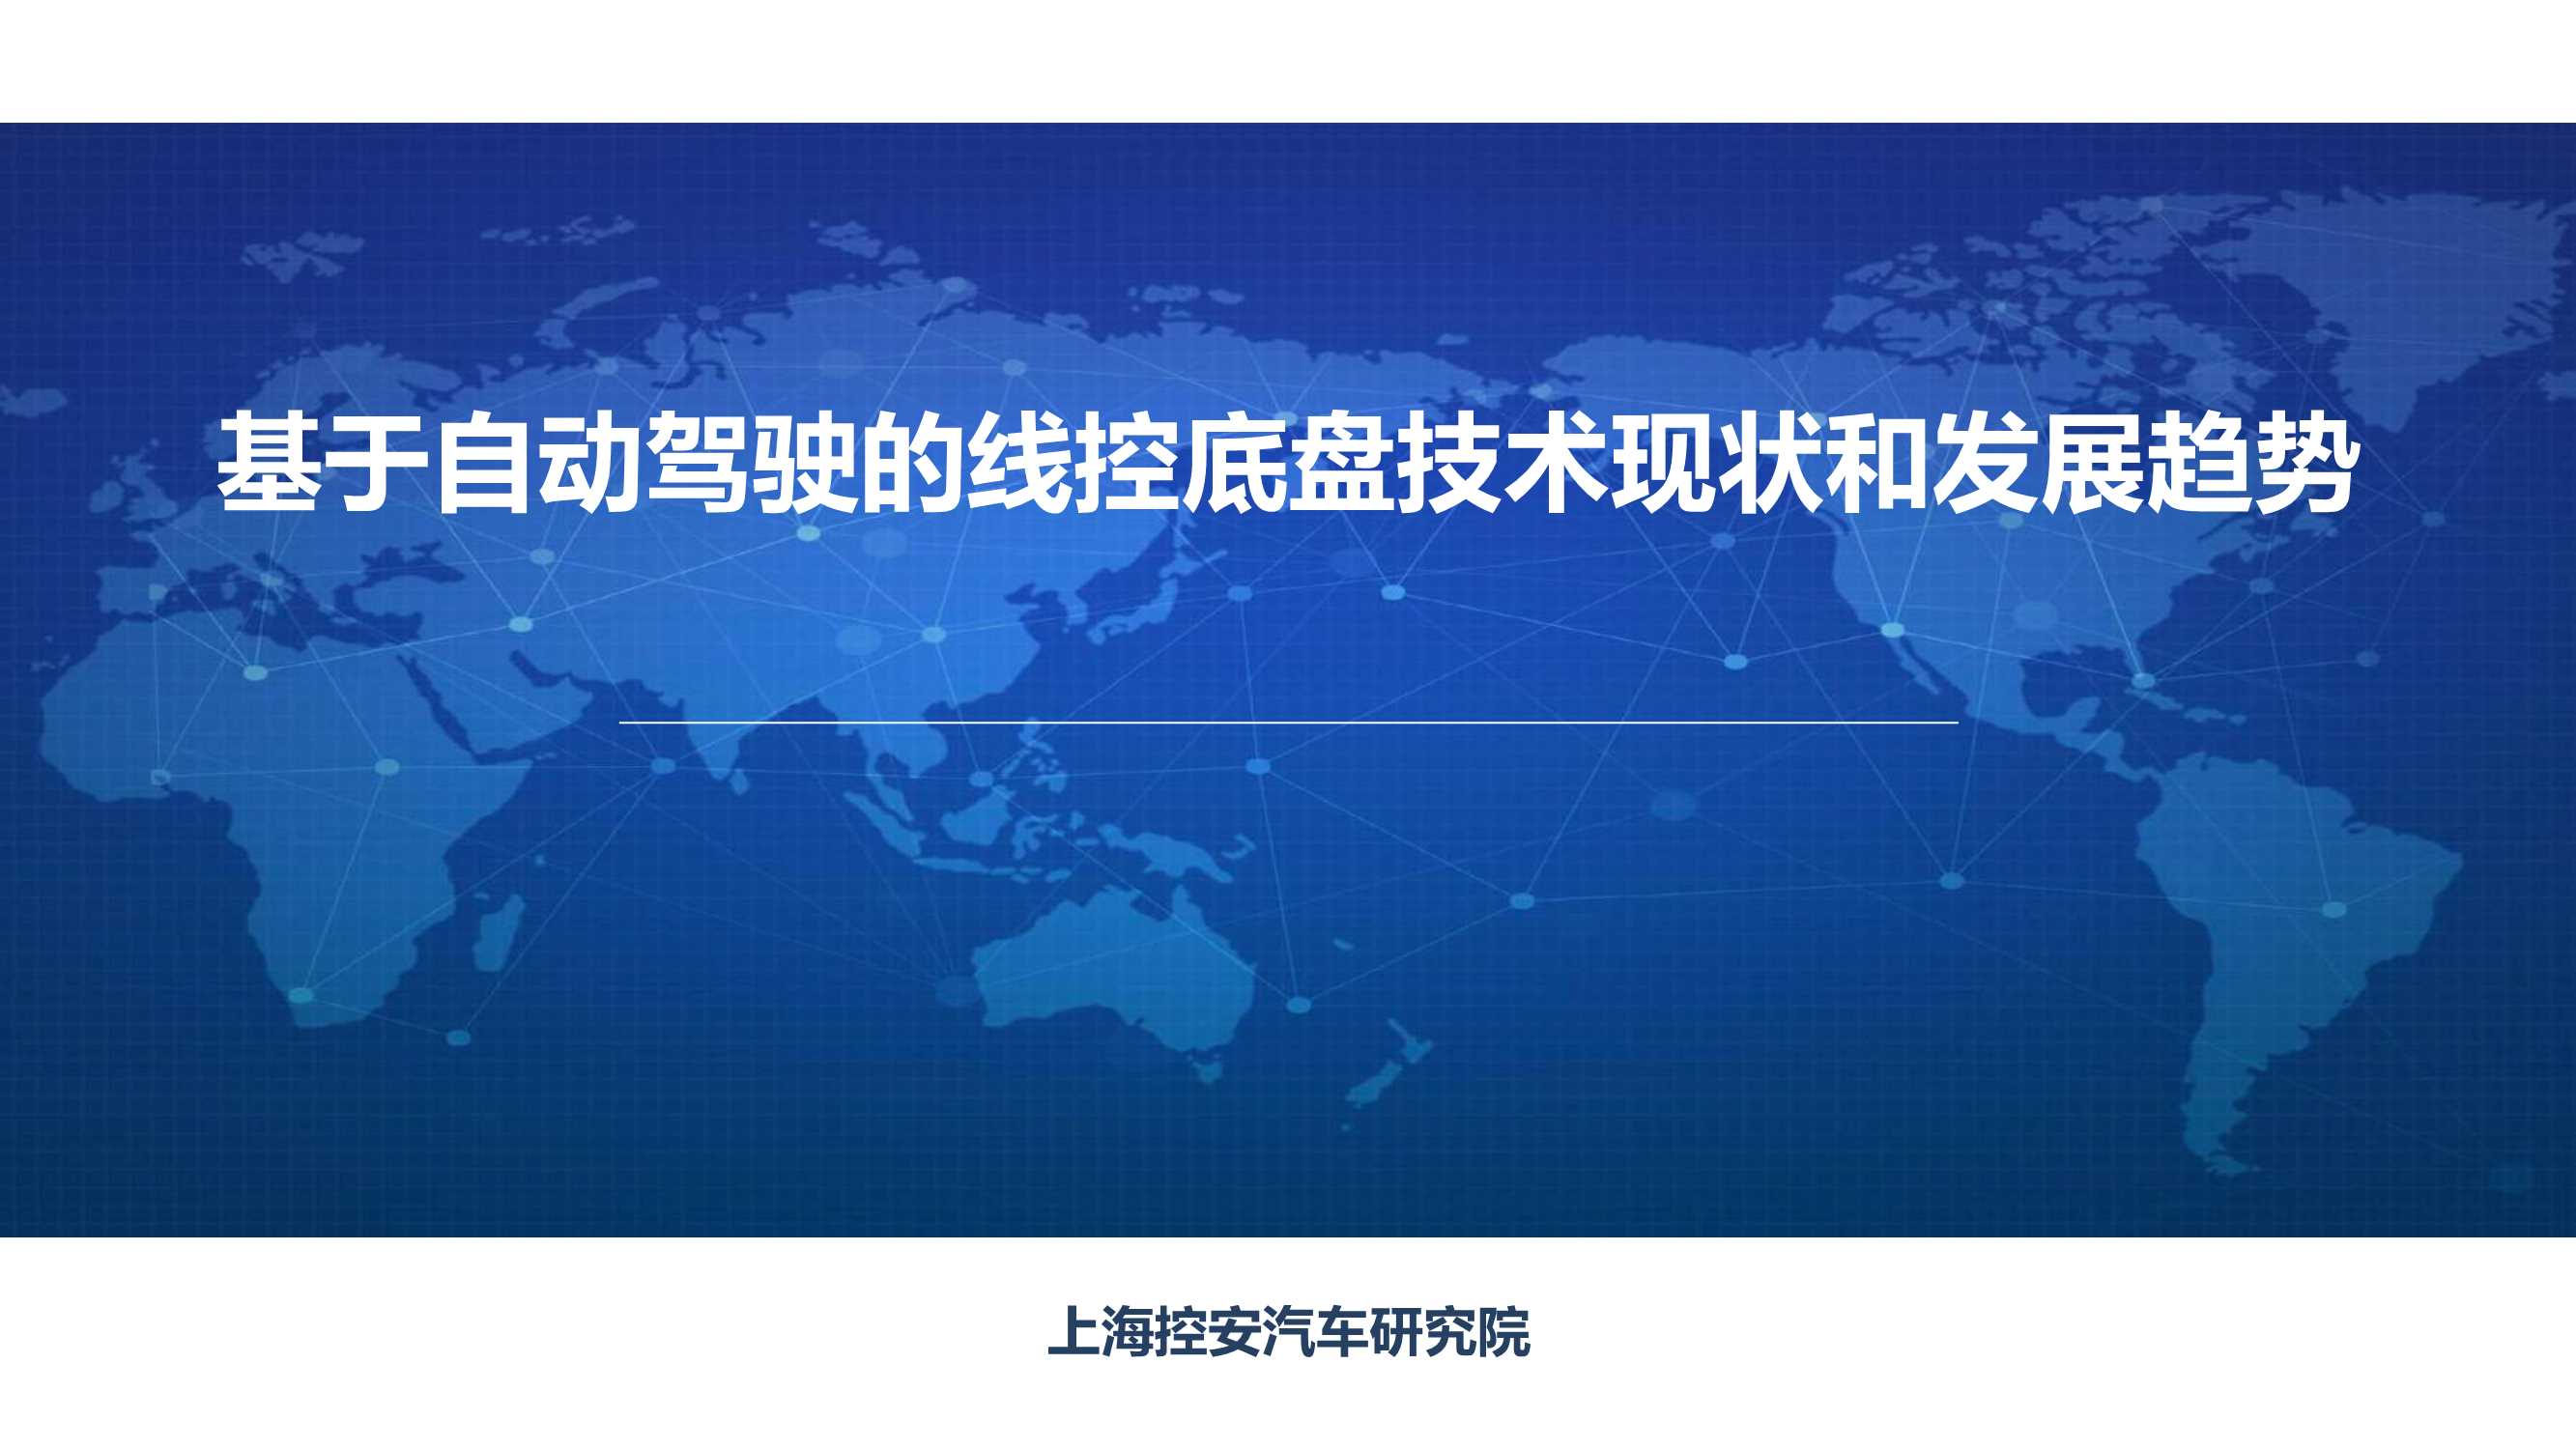 上海控安汽车研究院-基于自动驾驶的线控底盘技术现状和发展趋势-2021.12-148页